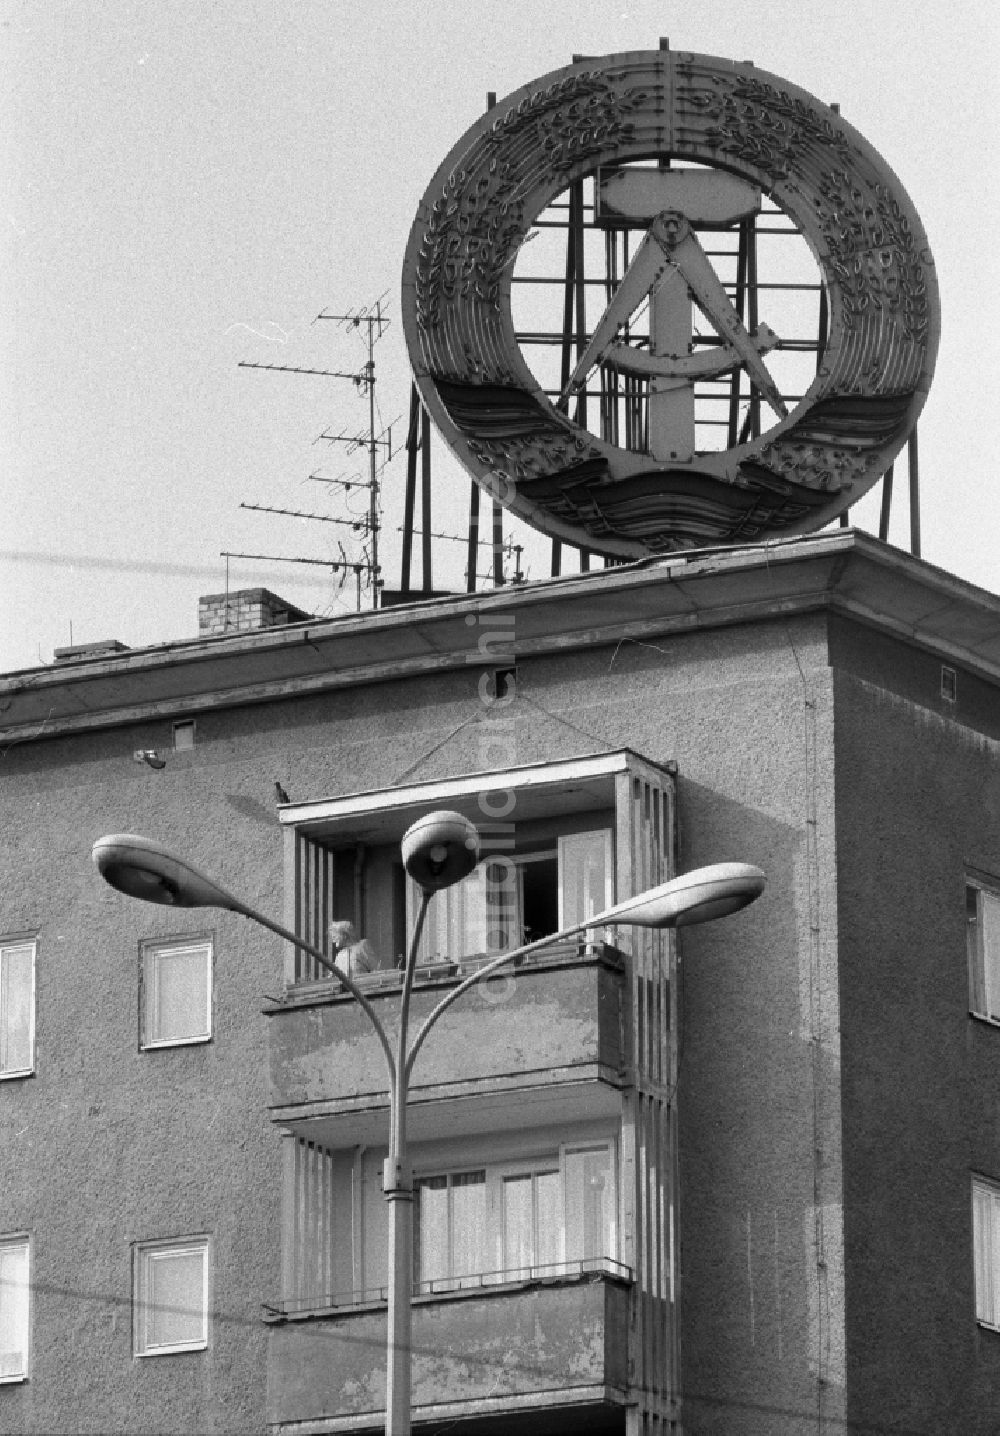 DDR-Bildarchiv: Berlin - Symbol auf dem Dach eines Wohnhauses in Berlin in der DDR